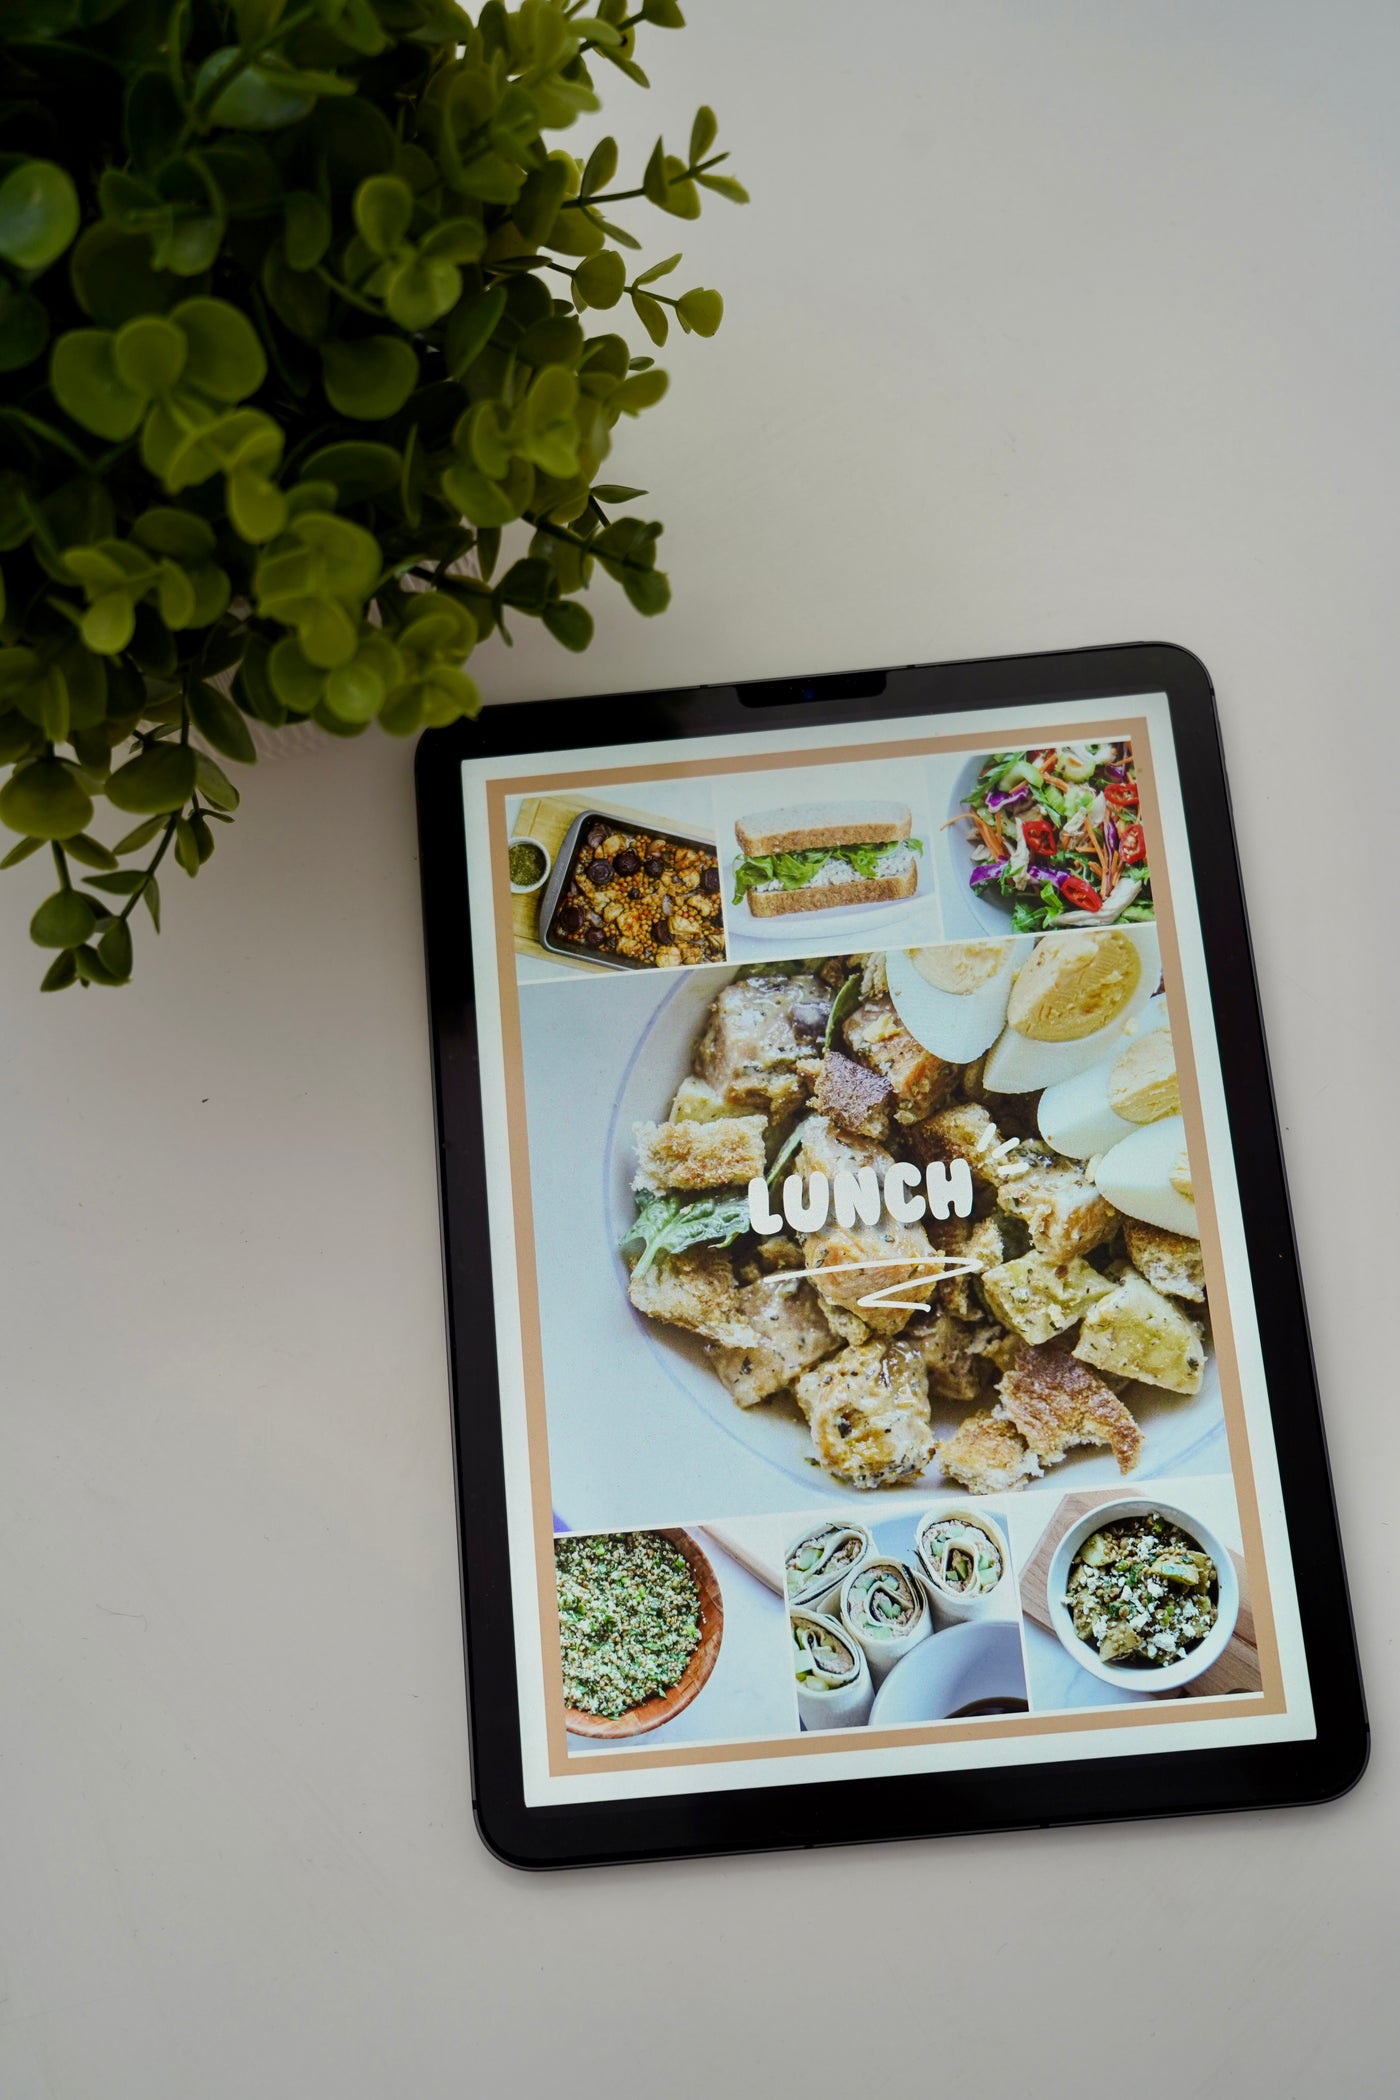 Healthy Lunch Hacks Recipe eBook